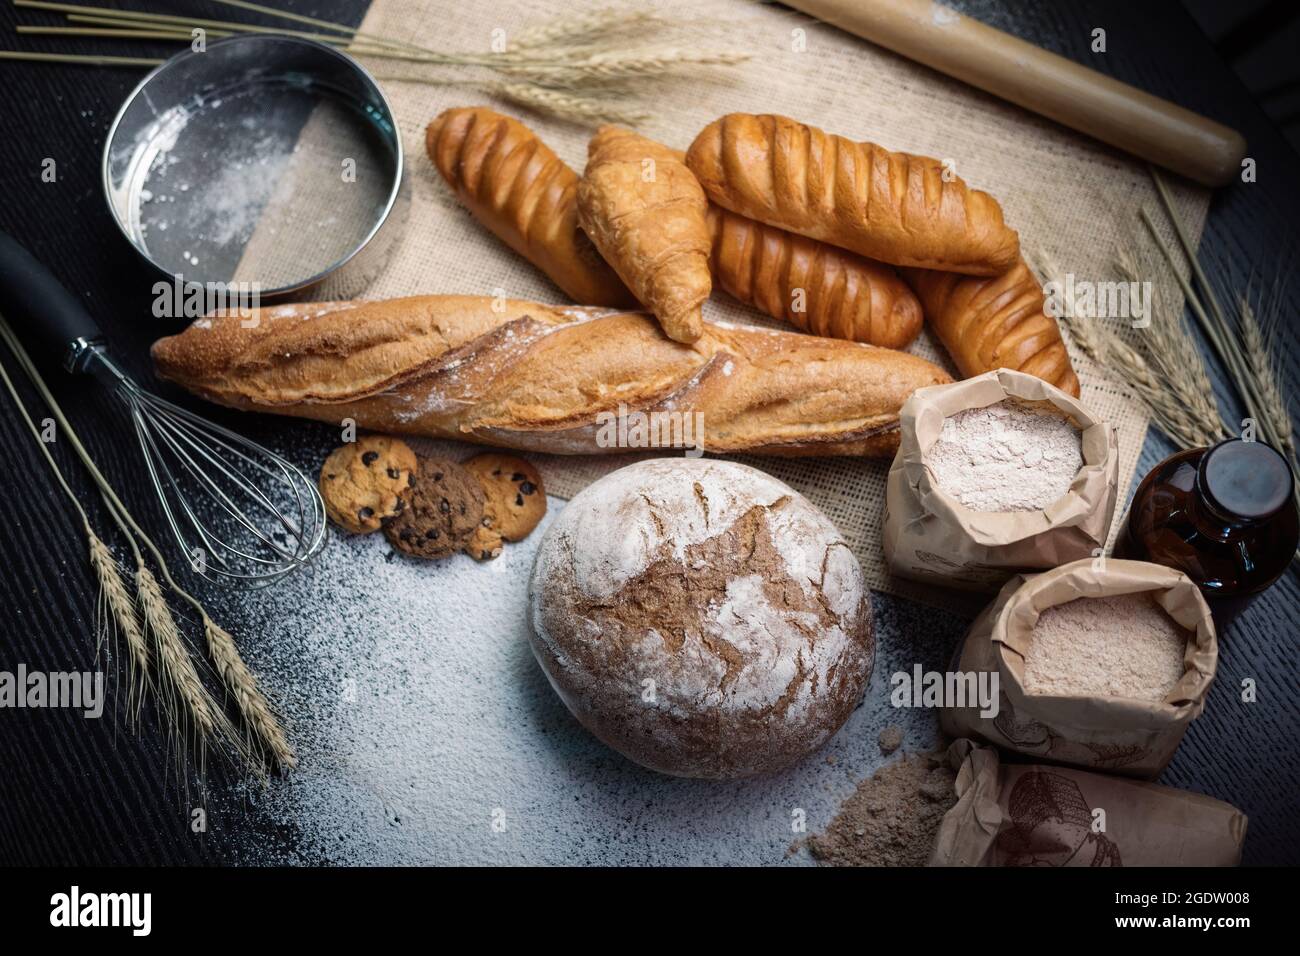 Viele Arten von Brot Studio Shot mit Zutaten Mehl Samenkorn rund um Foto Aufnahme mit hohem iso kann etwas Rauschen und Gewinn. Stockfoto